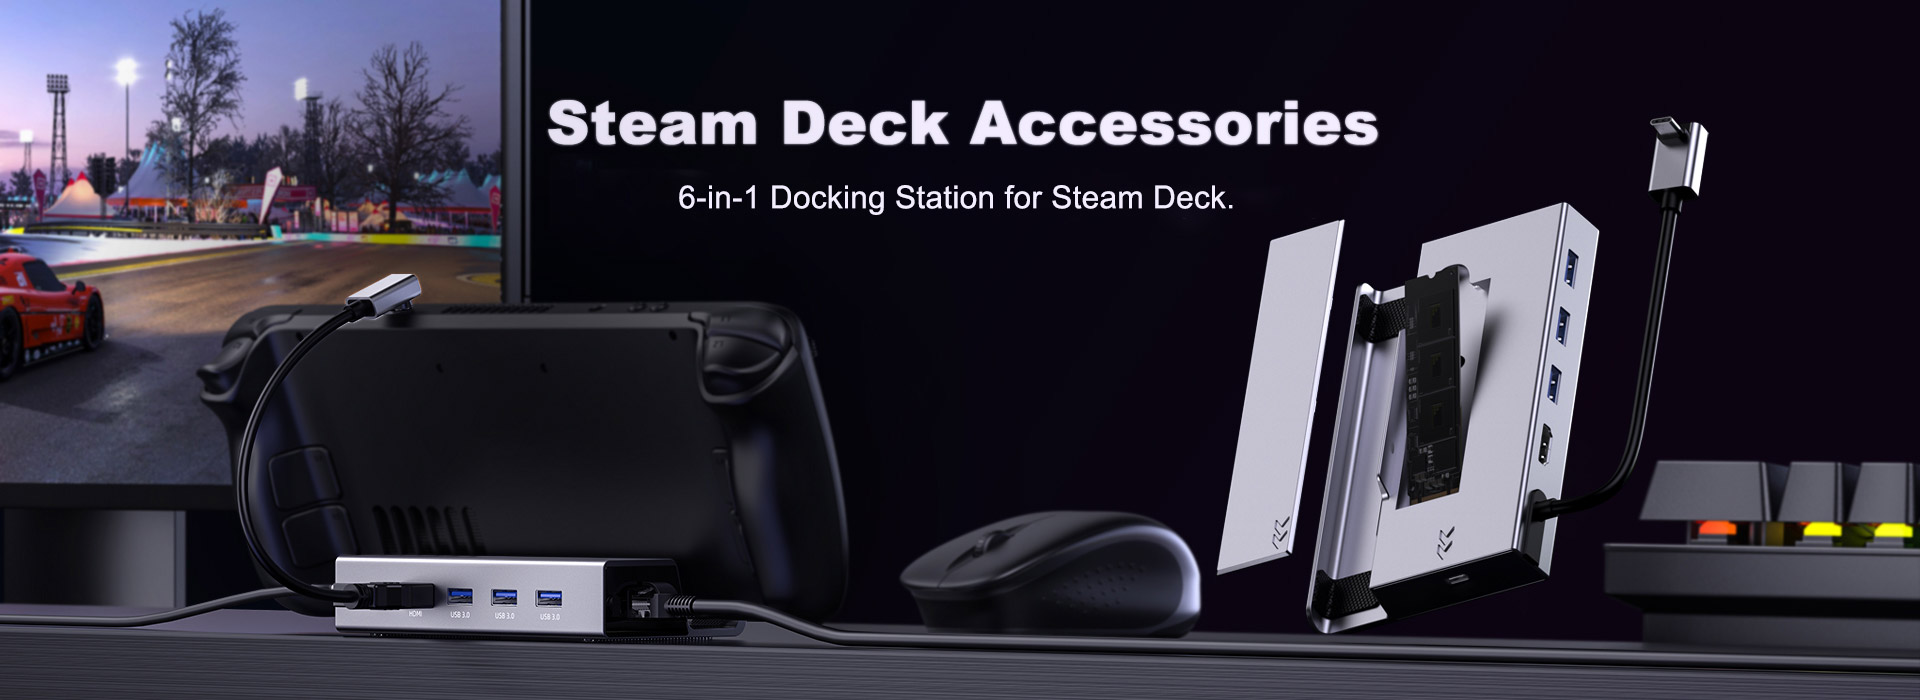 Steam deck docking station